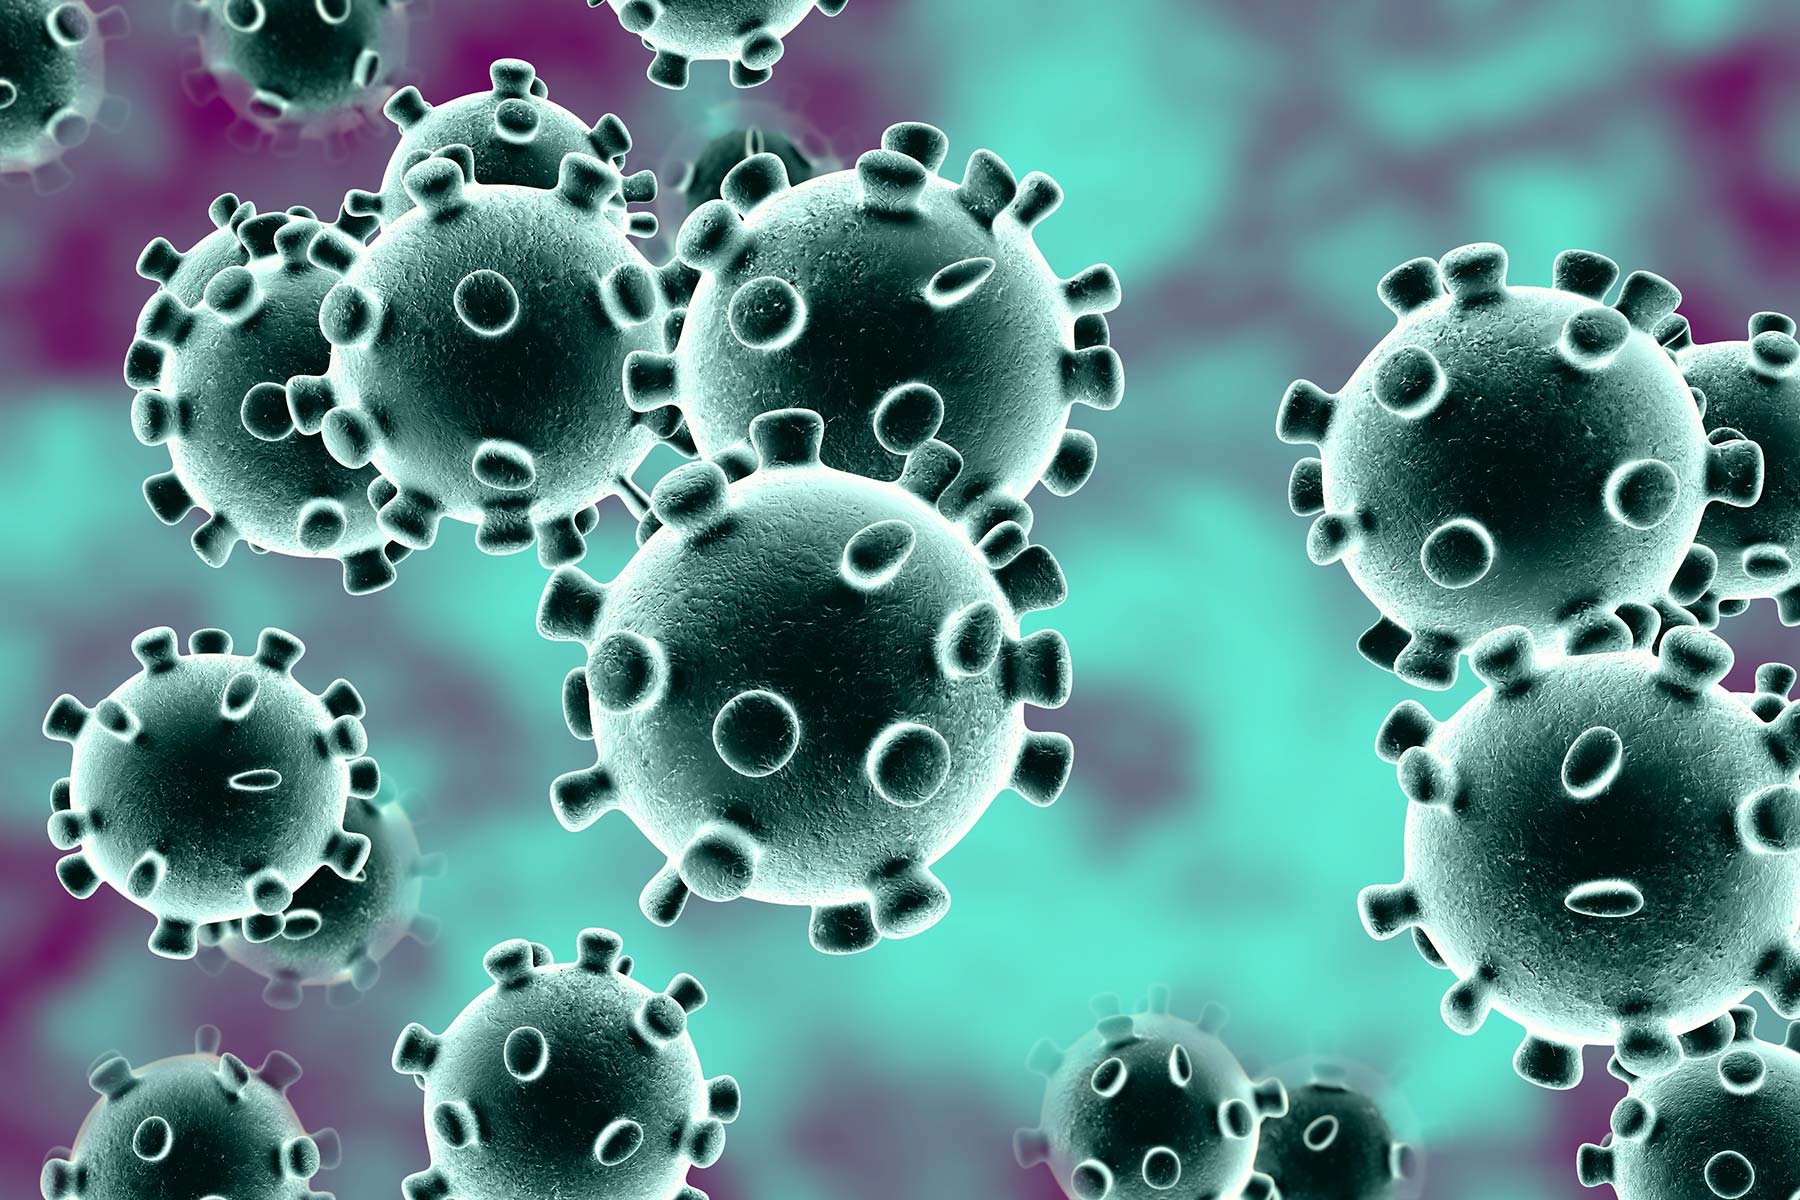  Coronavirus: vârf în aprilie-mai, în cursul verii va scădea, în iarnă va crește din nou